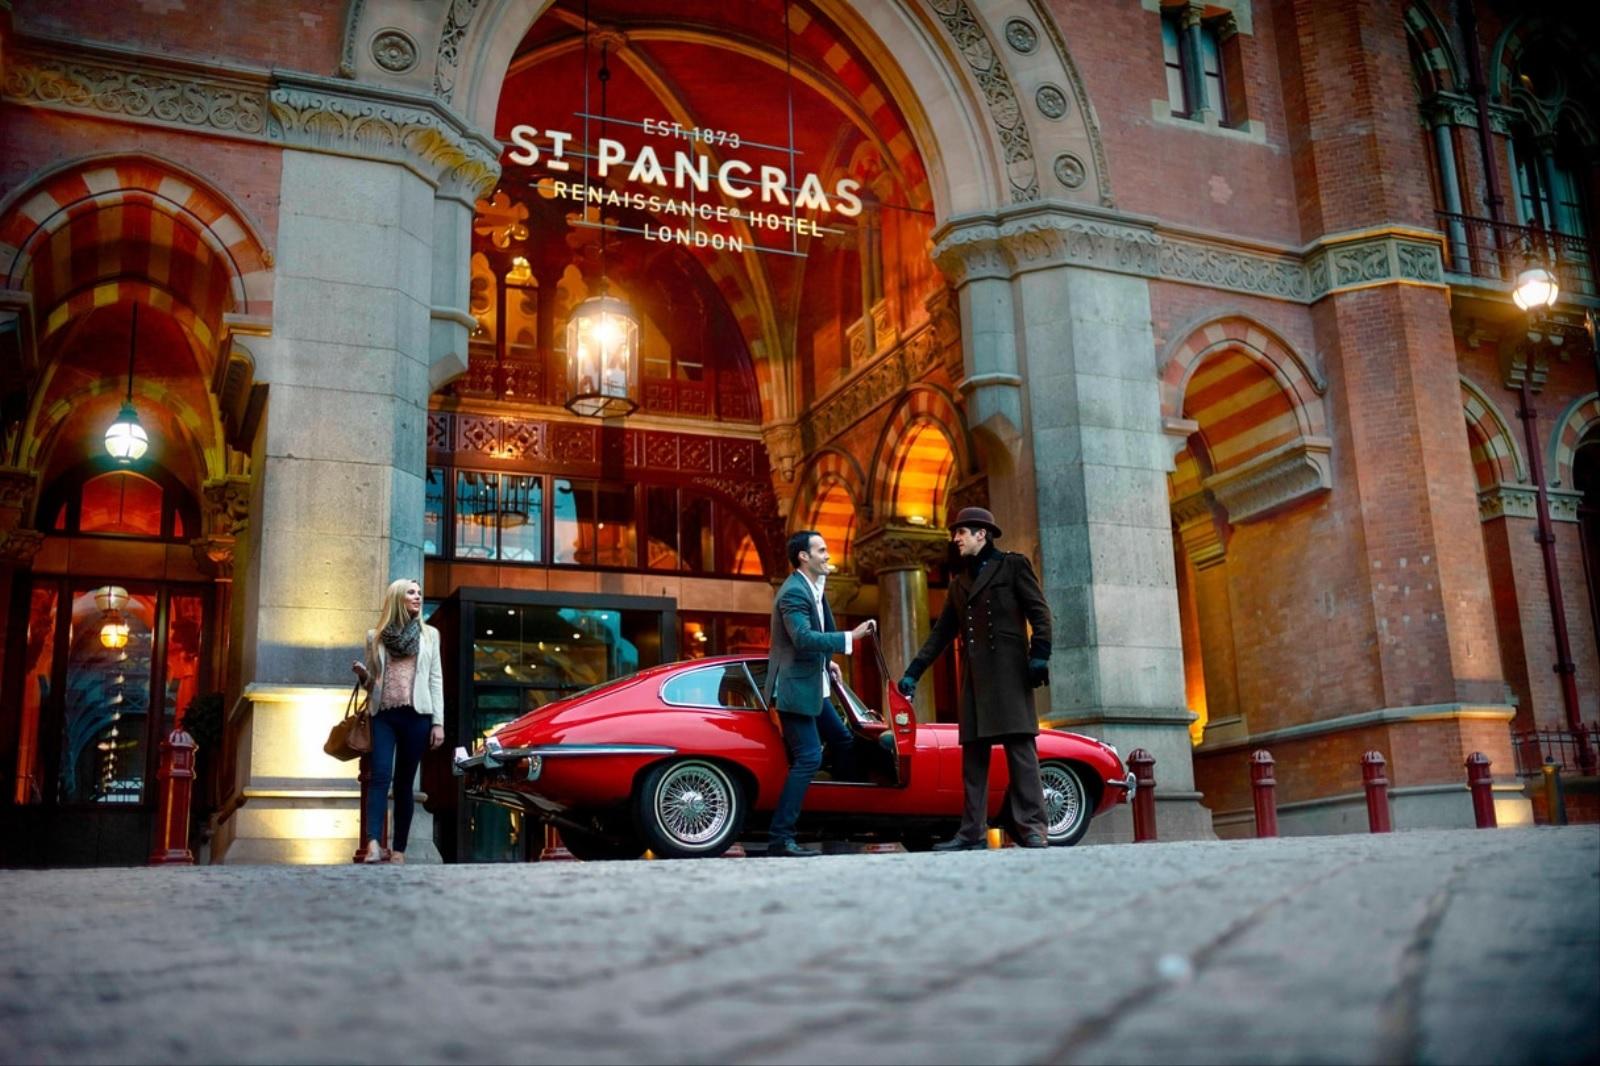 St. Pancras Renaissance Hotel London Entrance